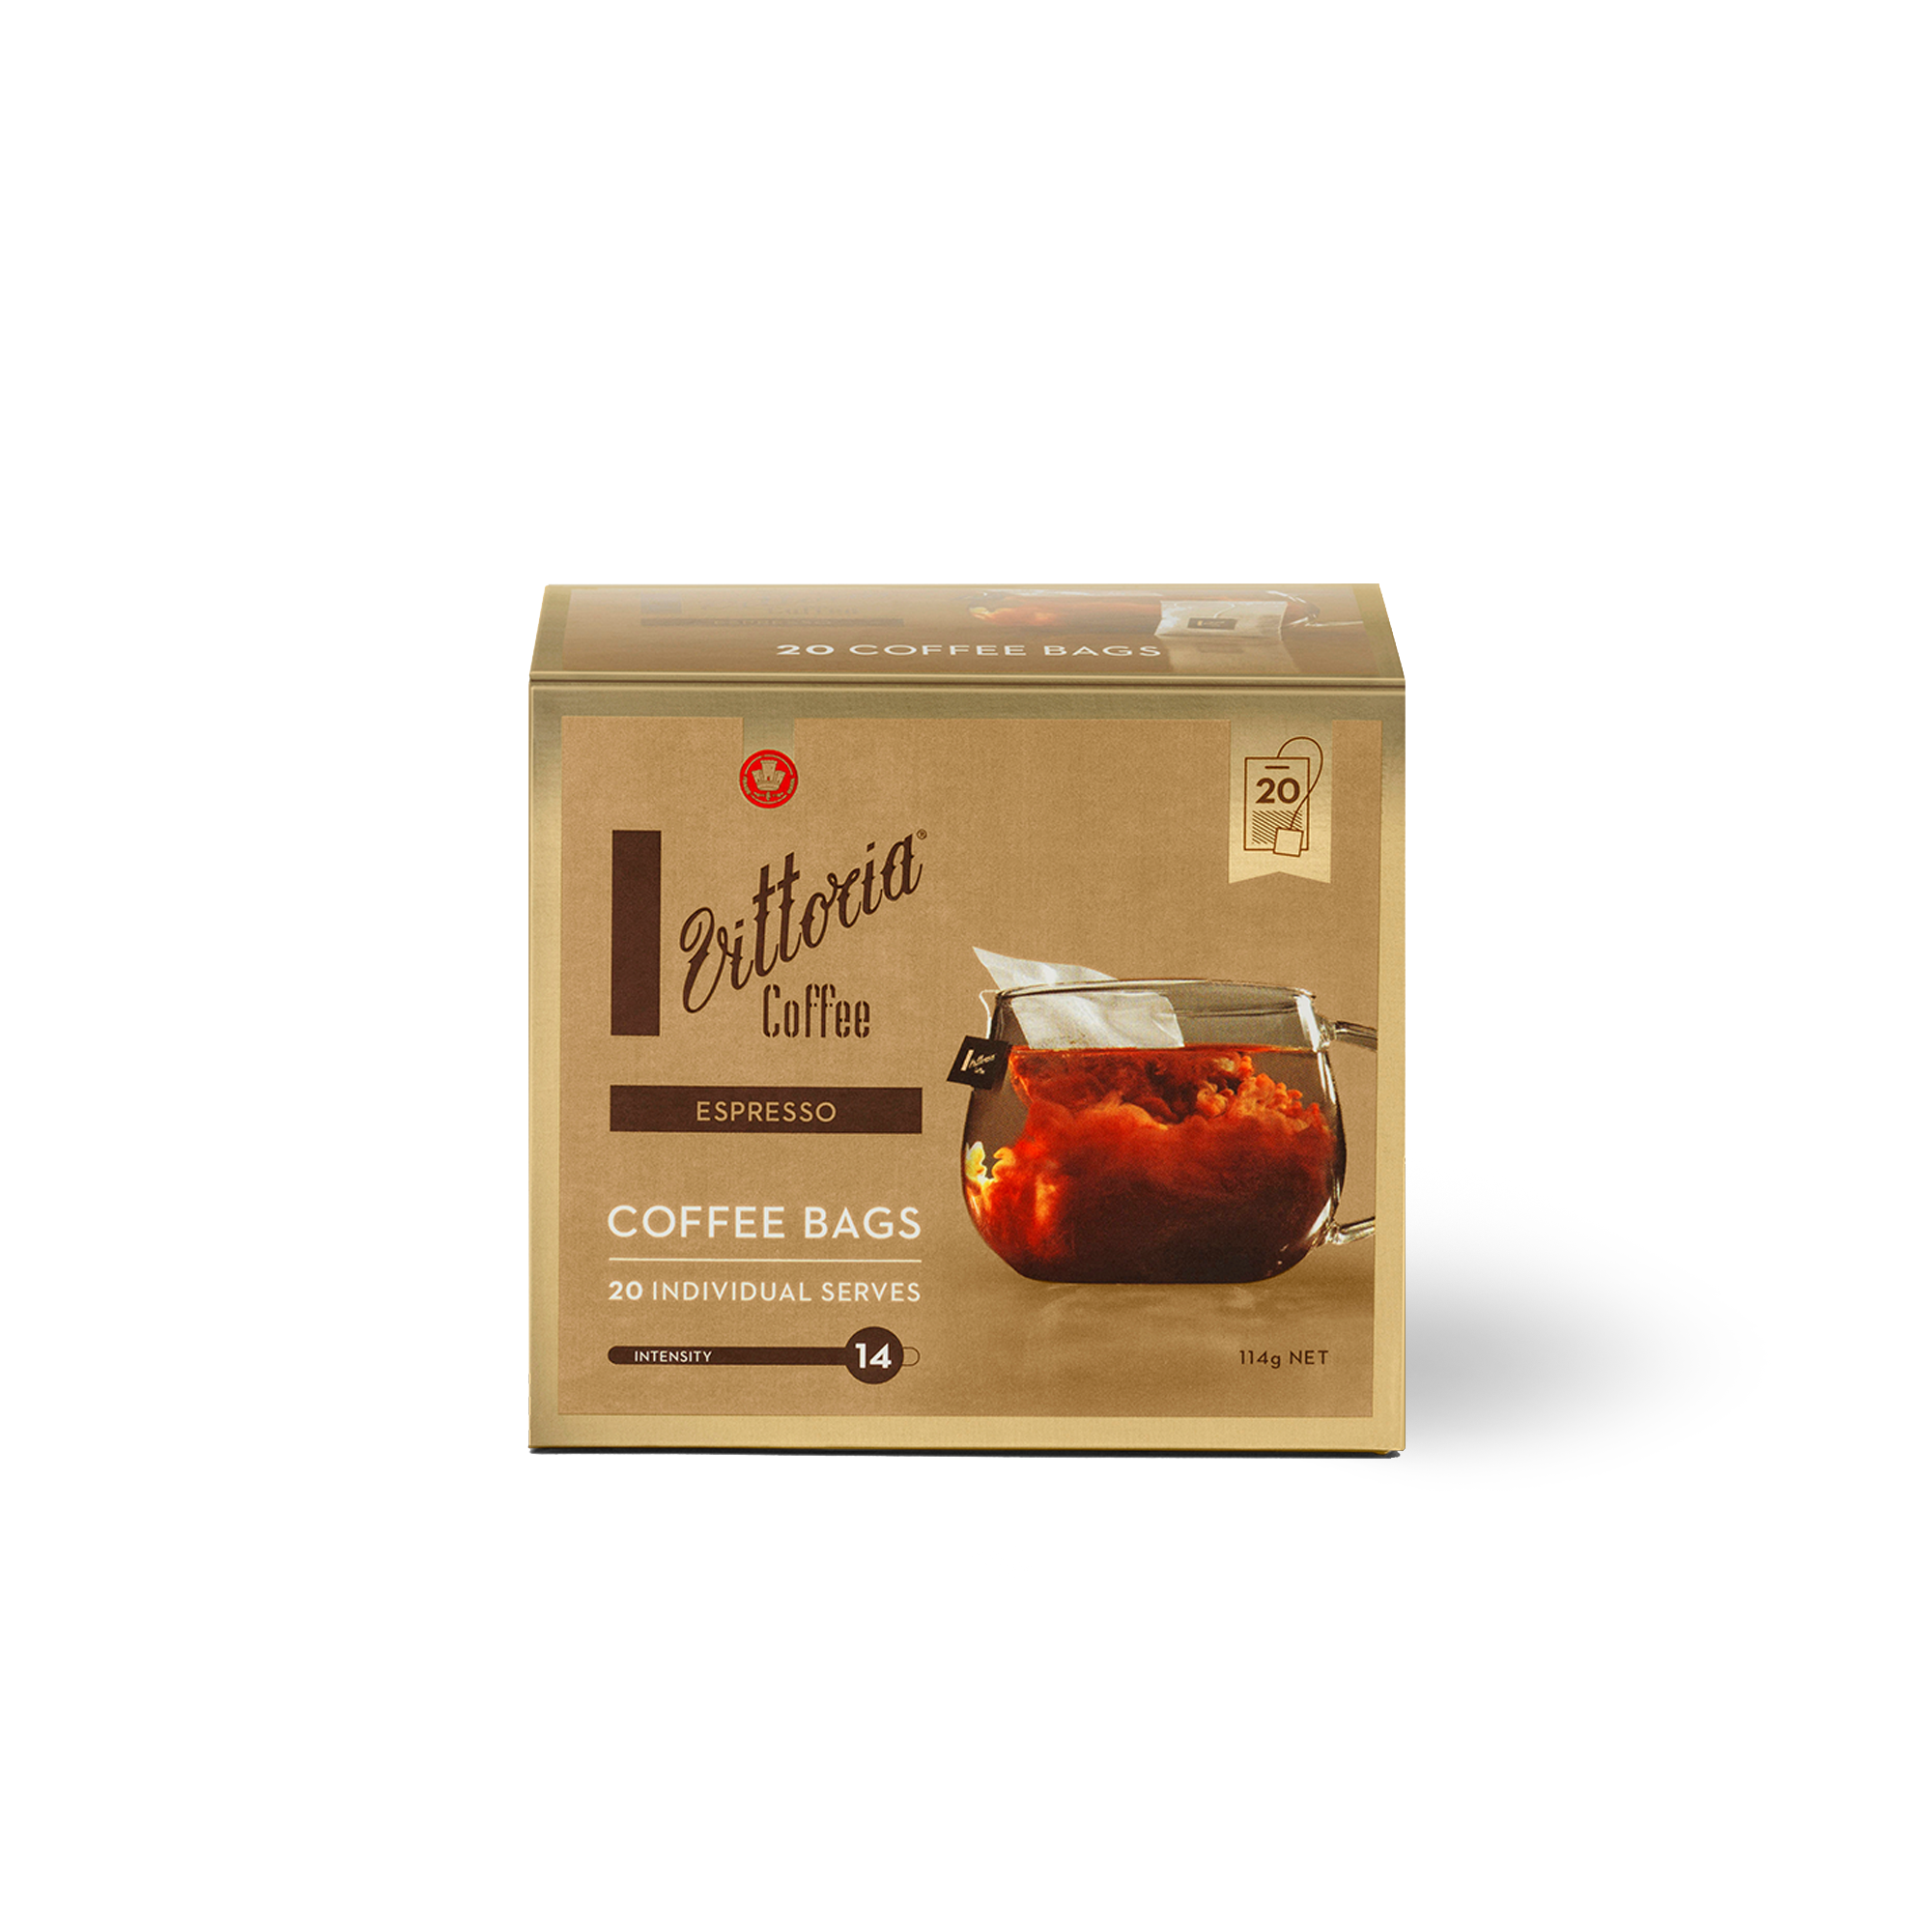 Vittoria Coffee Bags Espresso